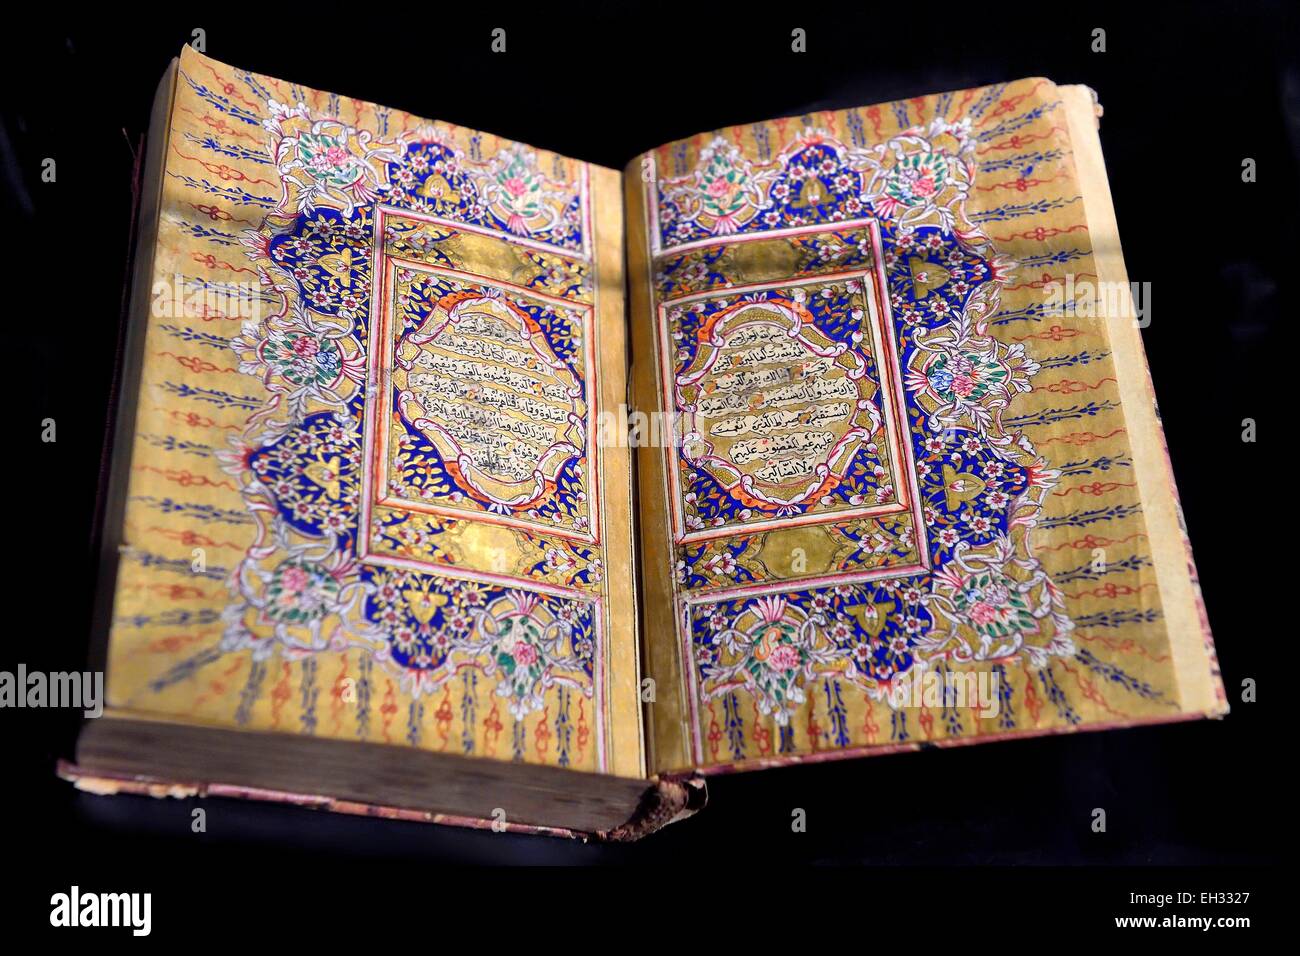 Maroc, Casablanca, Abderrahman Slaoui museum appelé le Collector's House, Coran, manuscrit Ottoman Naskh calligraphié en 1867 par Mahmoud Firhad Banque D'Images